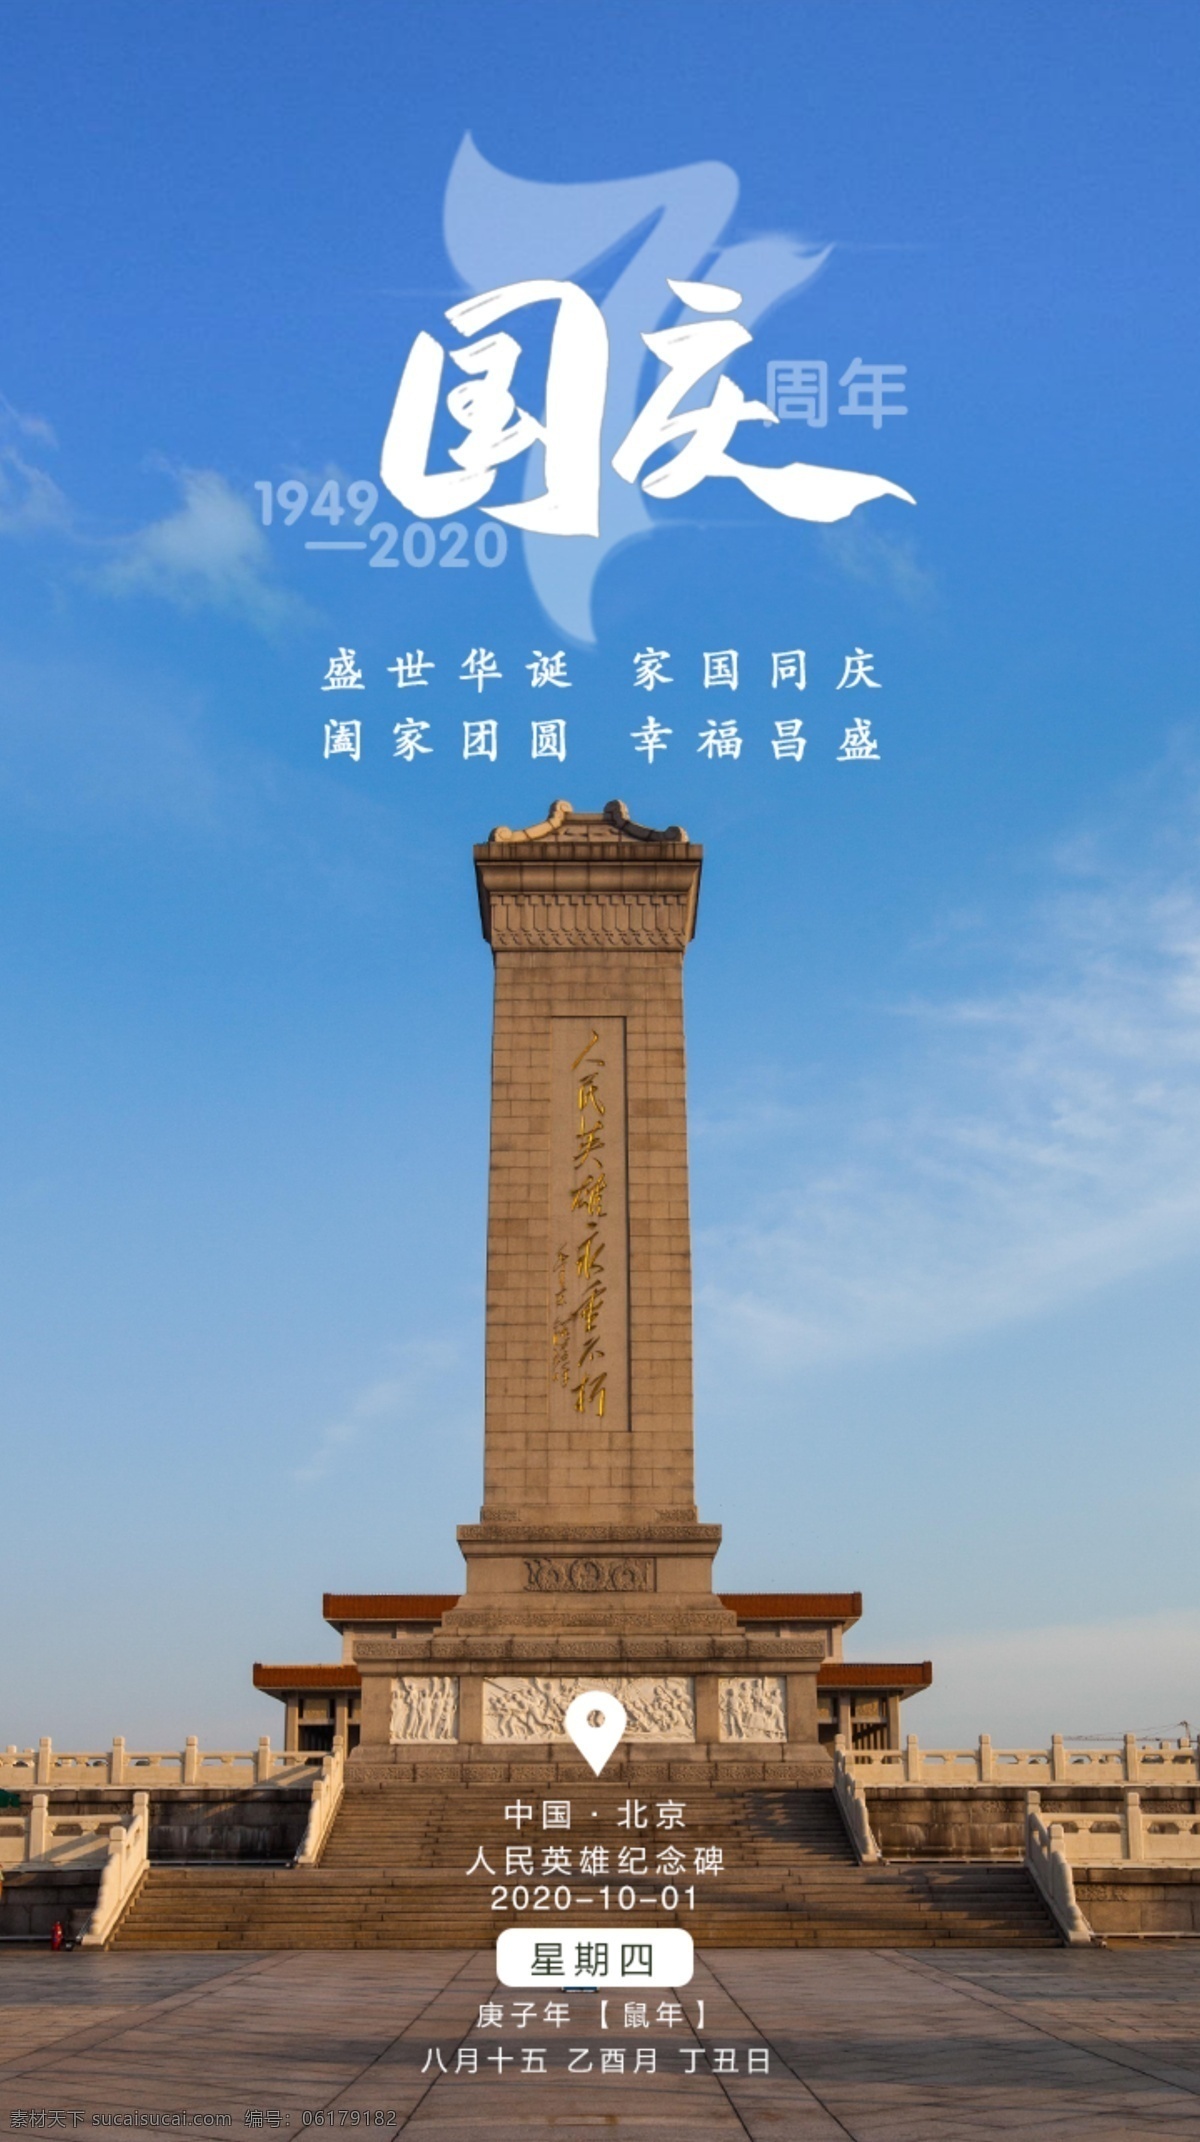 国庆图片 国庆 蓝天 纪念碑 北京 中国